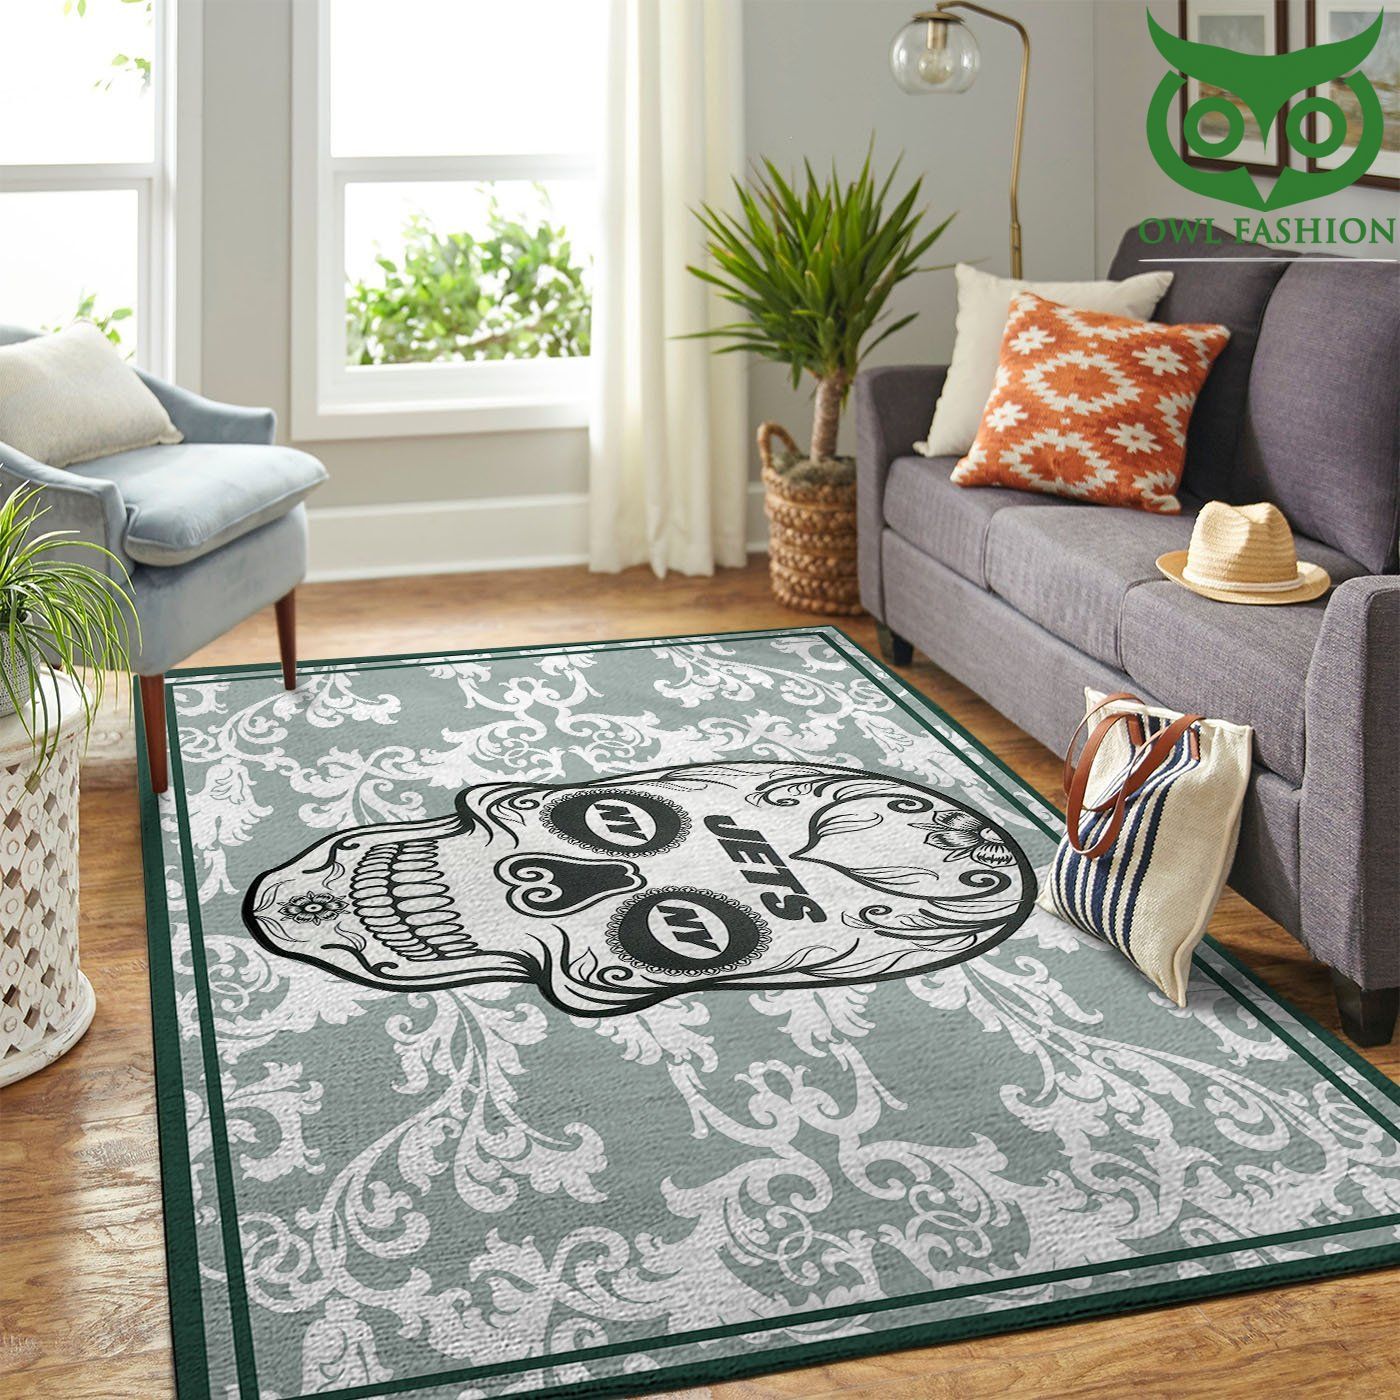 48 New York Jets Nfl Team Logo Skull Flower Style Nice carpet rug